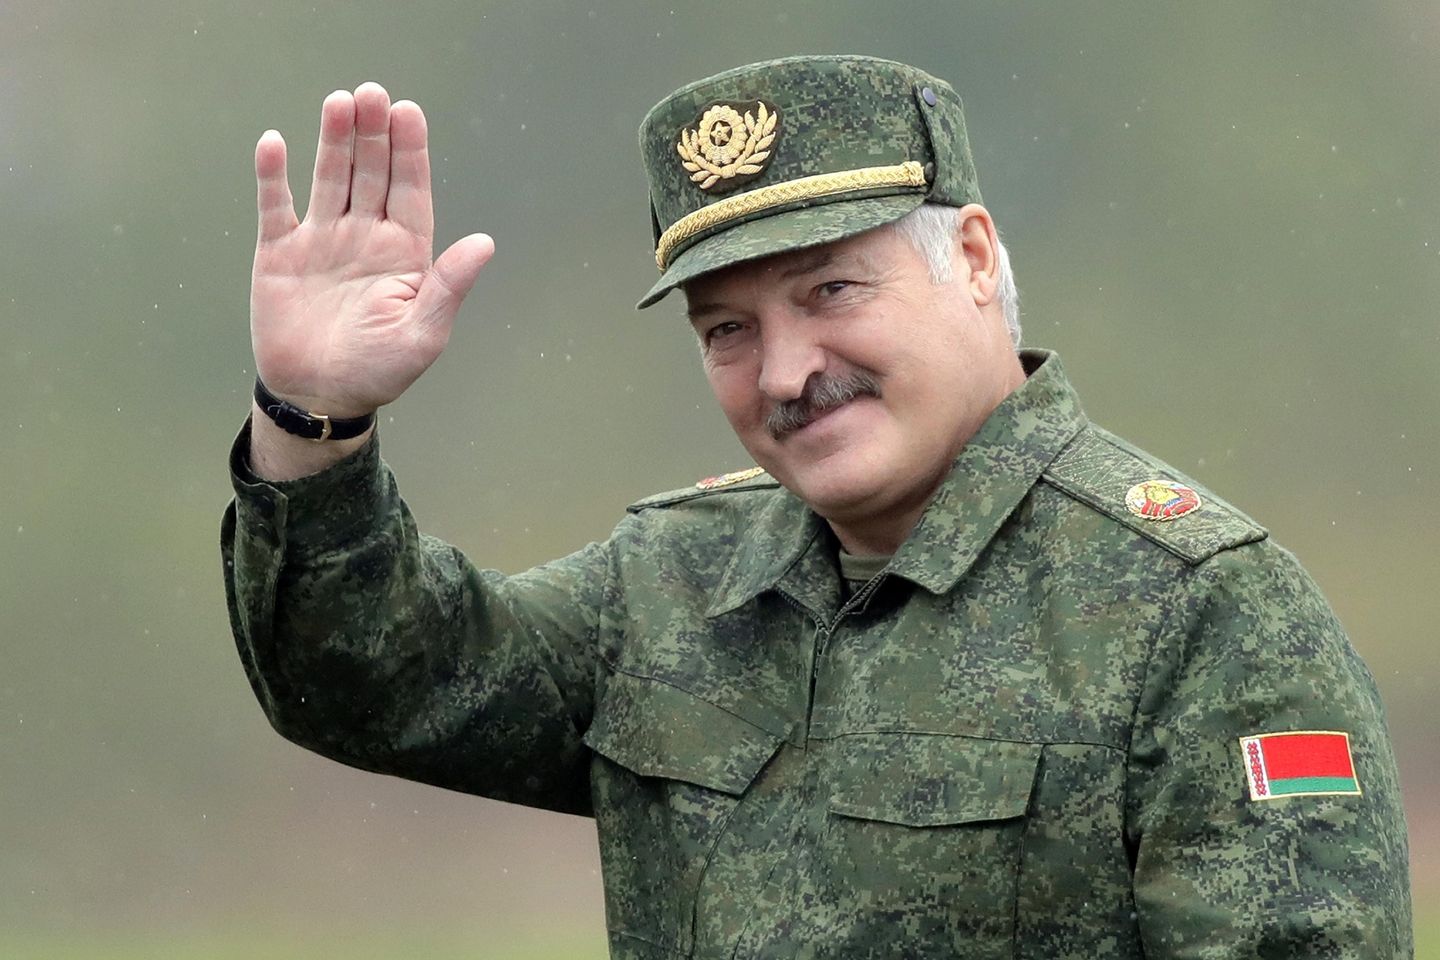 Cumhurbaşkanı Aleksandr Lukashenko, Beyaz Rusya'nın ancak işgal edilirse Rusya'nın yanında savaşacağını söyledi.